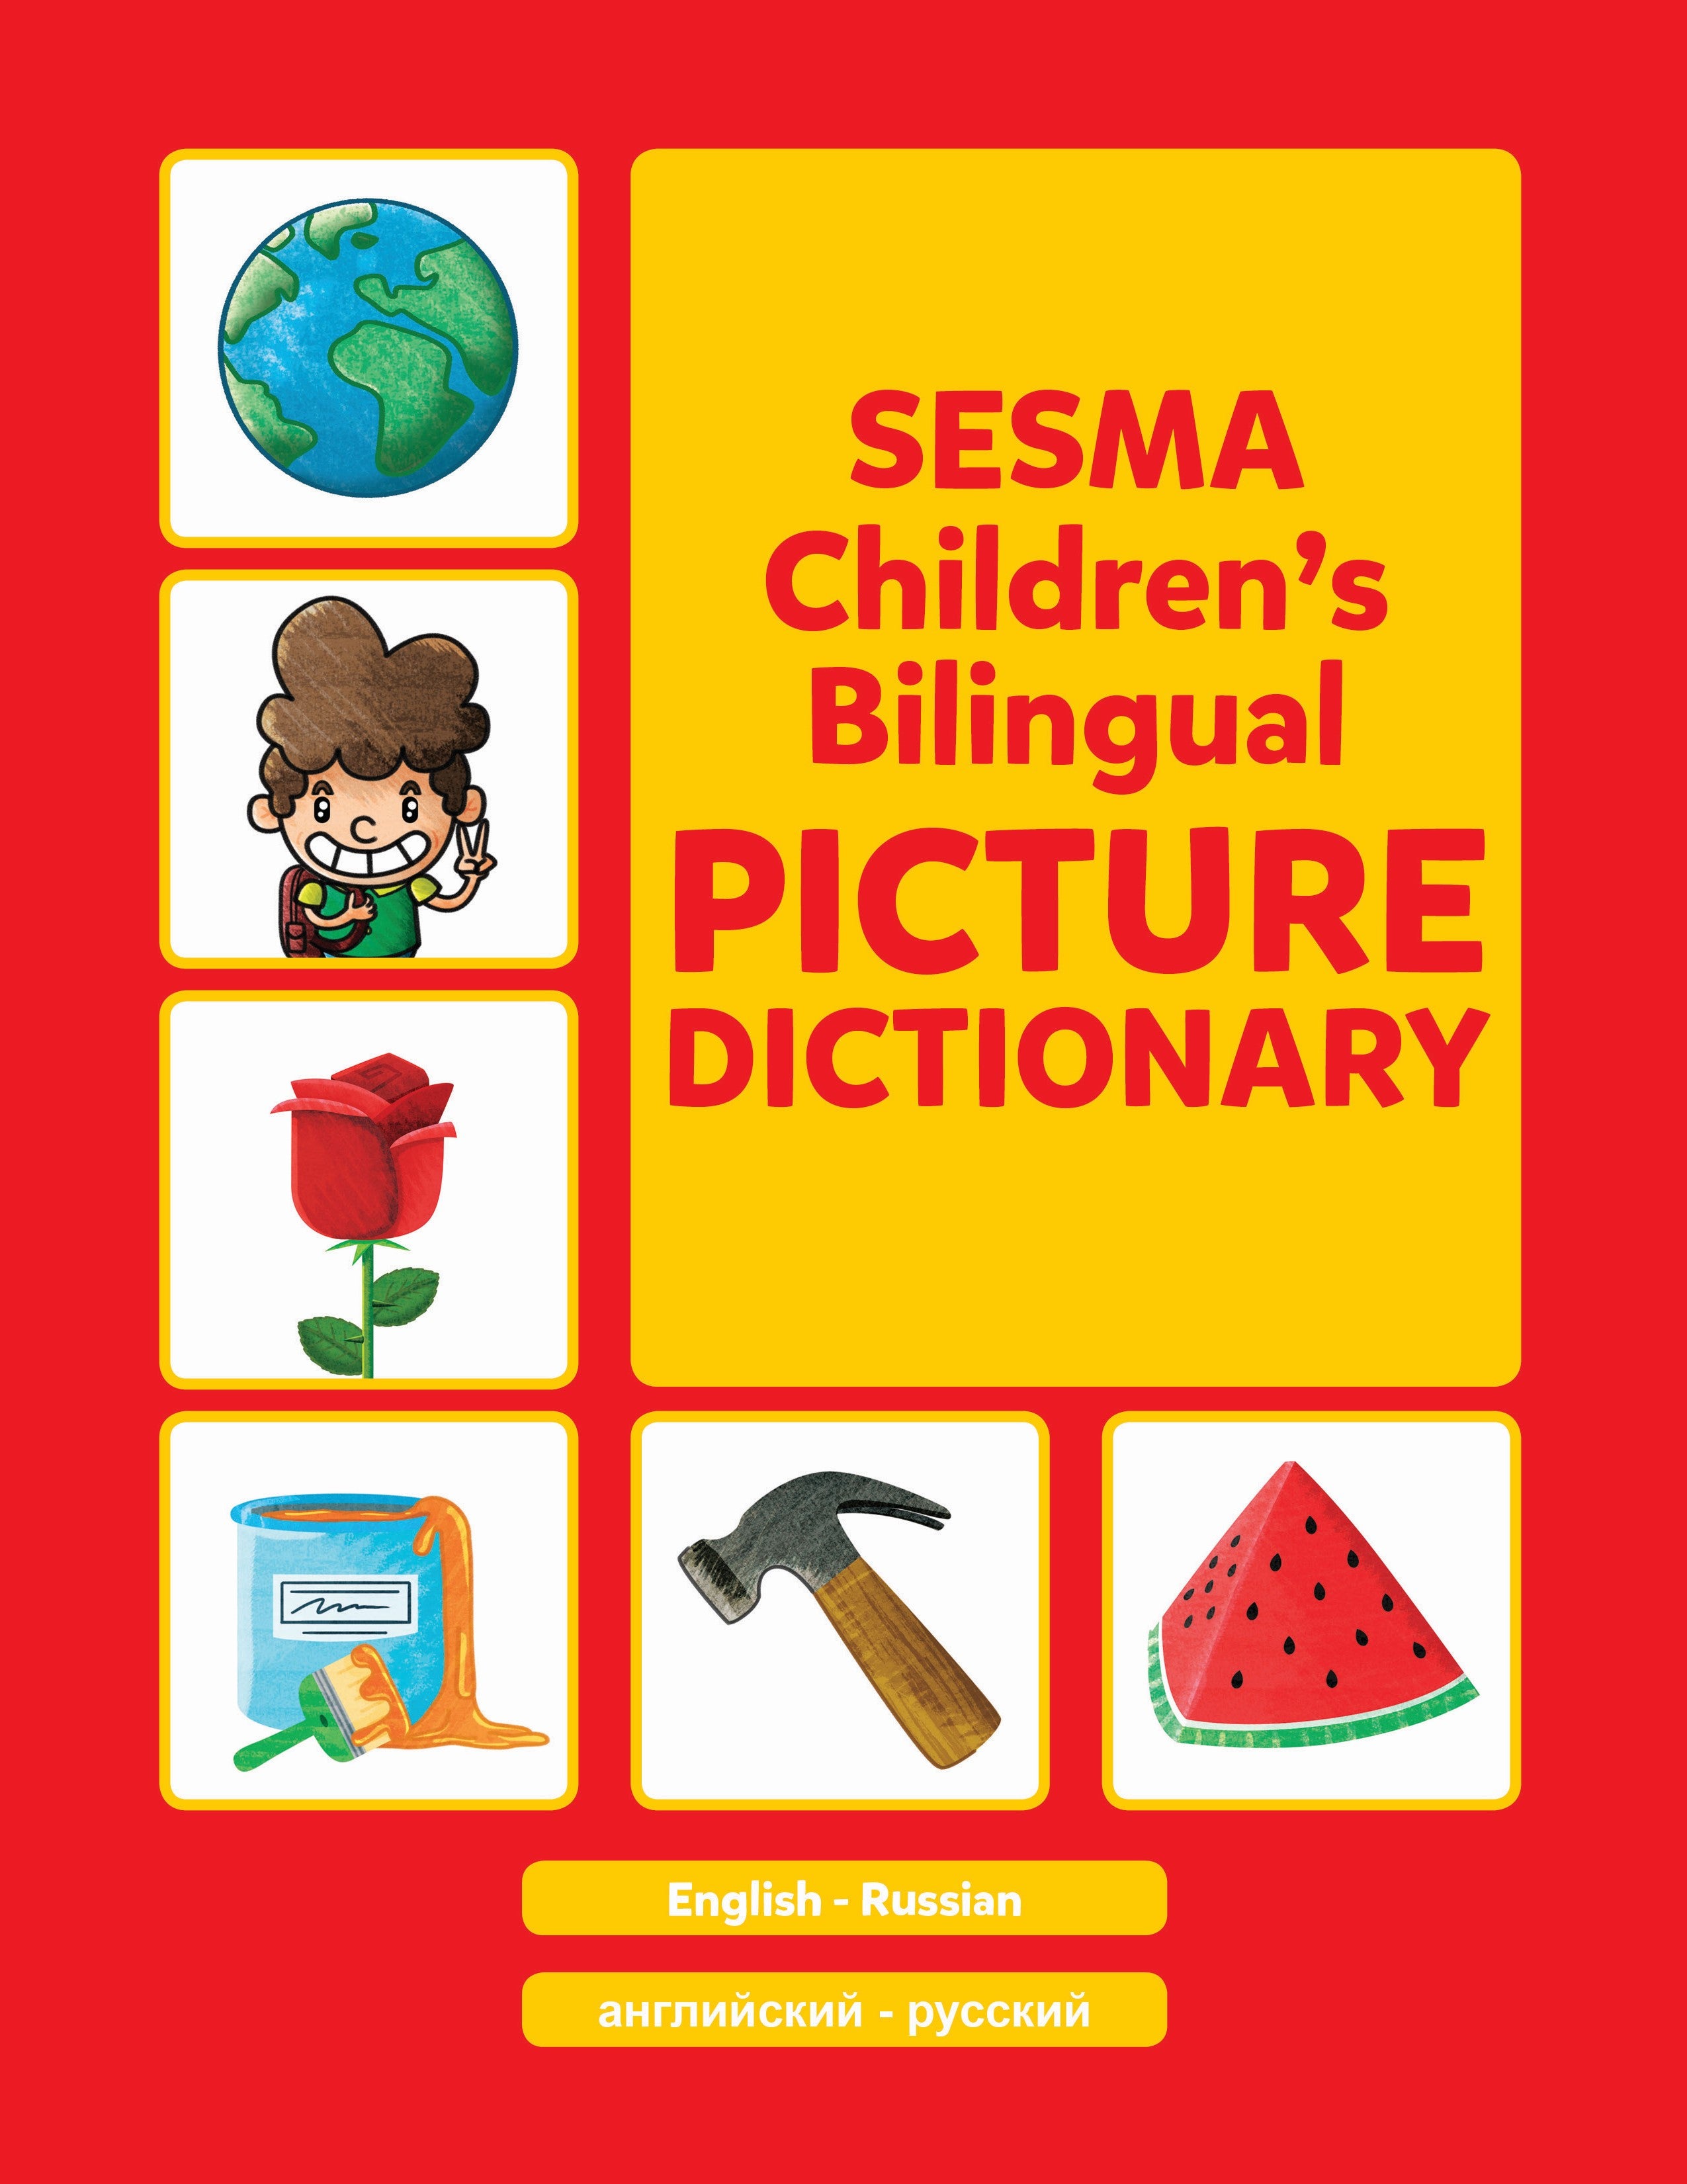 Russian-English Sesma Children's Bilingual Picture Dictionary